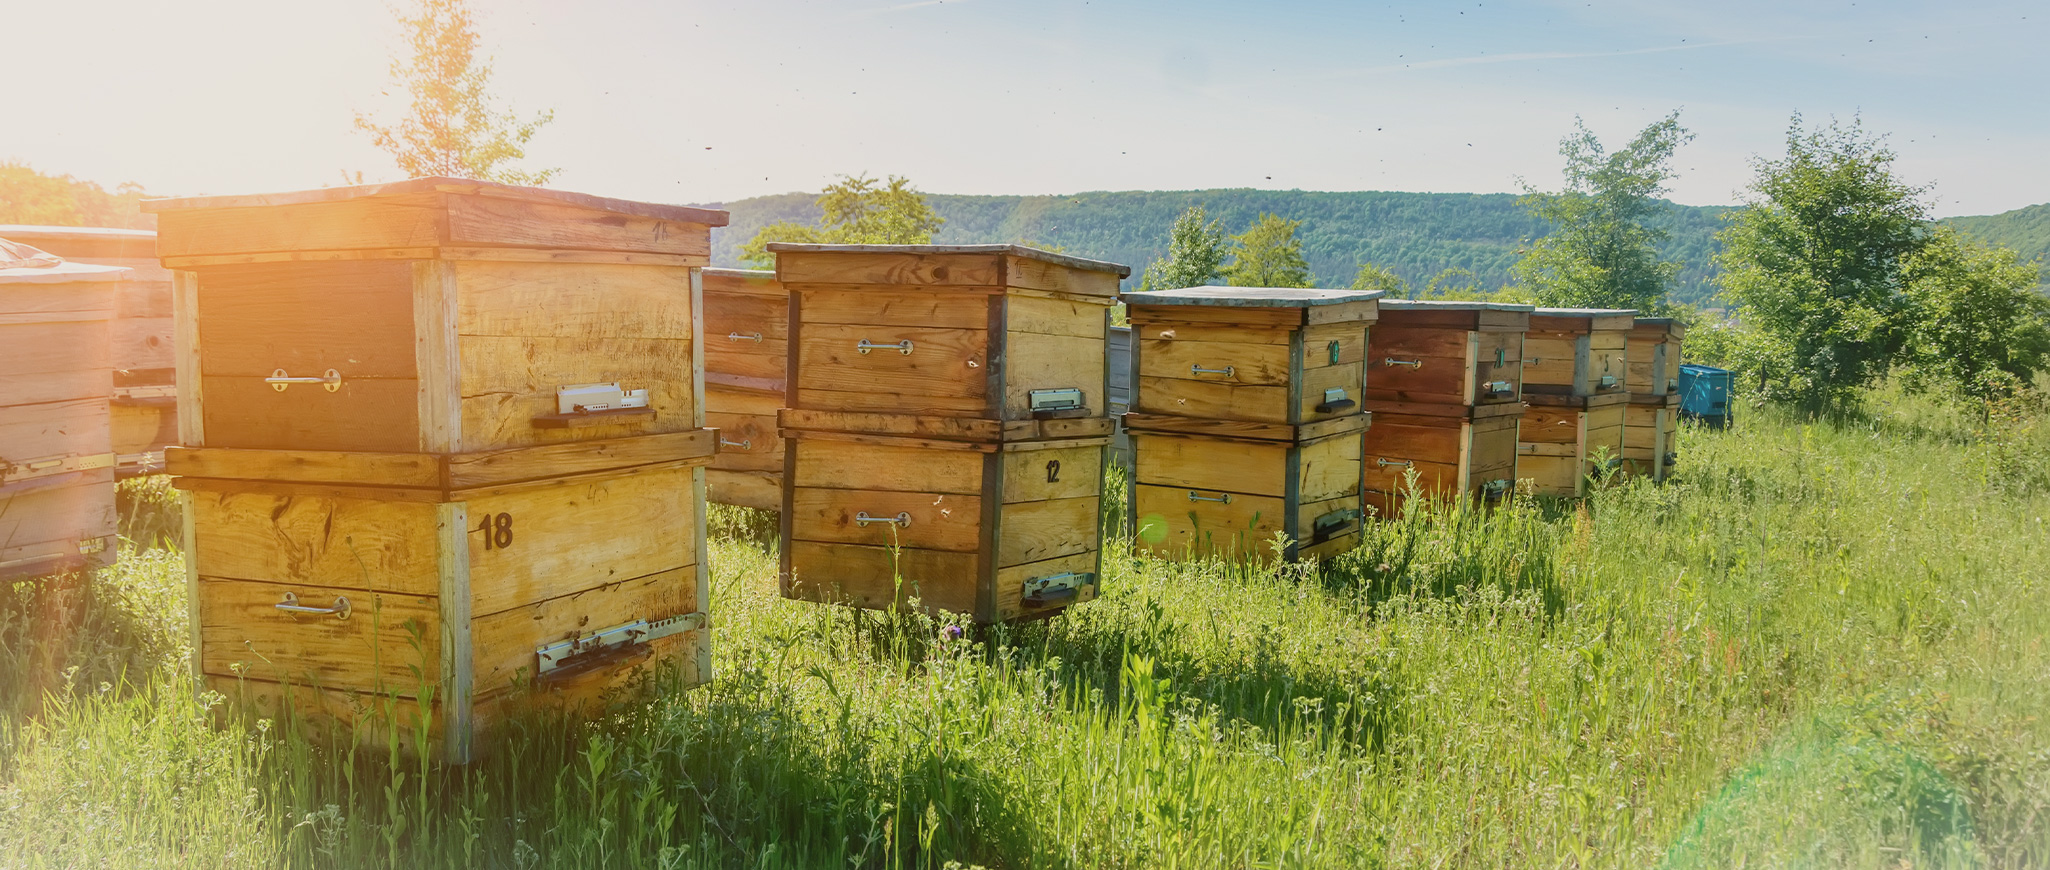 Секреты успешной пасеки: как обеспечить здоровье и комфорт пчел